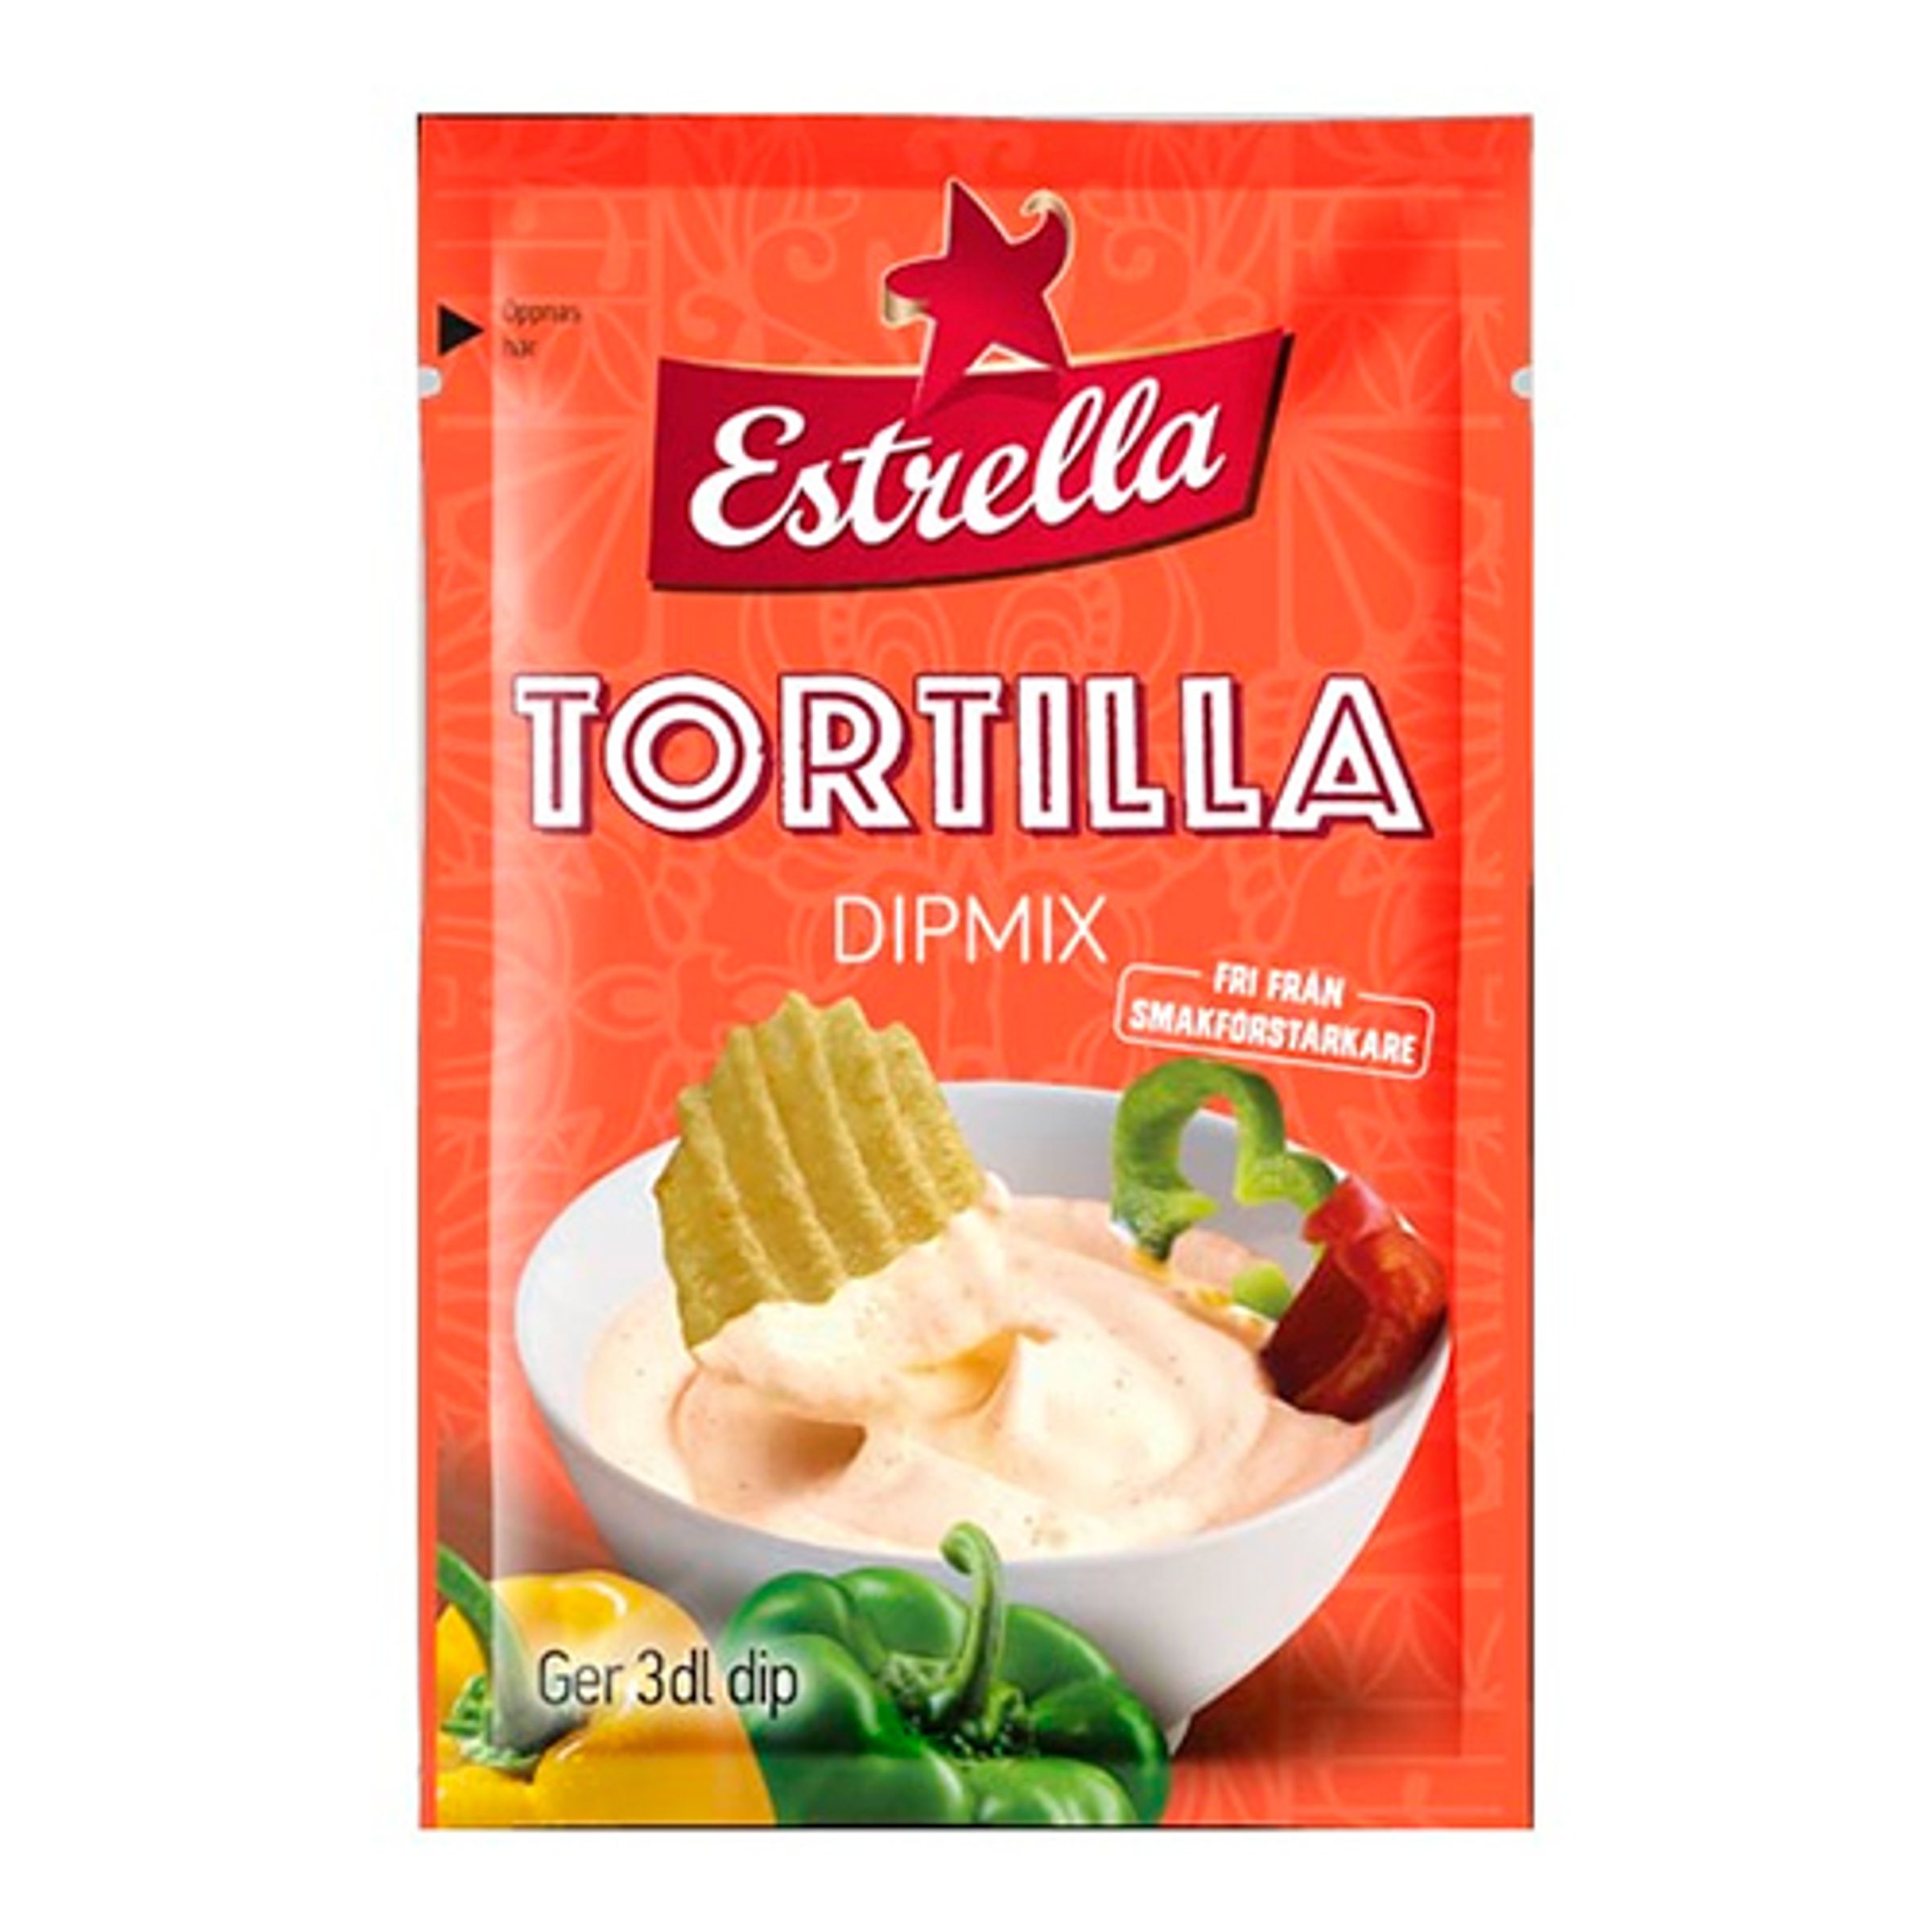 Estrella Dippmix Tortilla - 28 gram